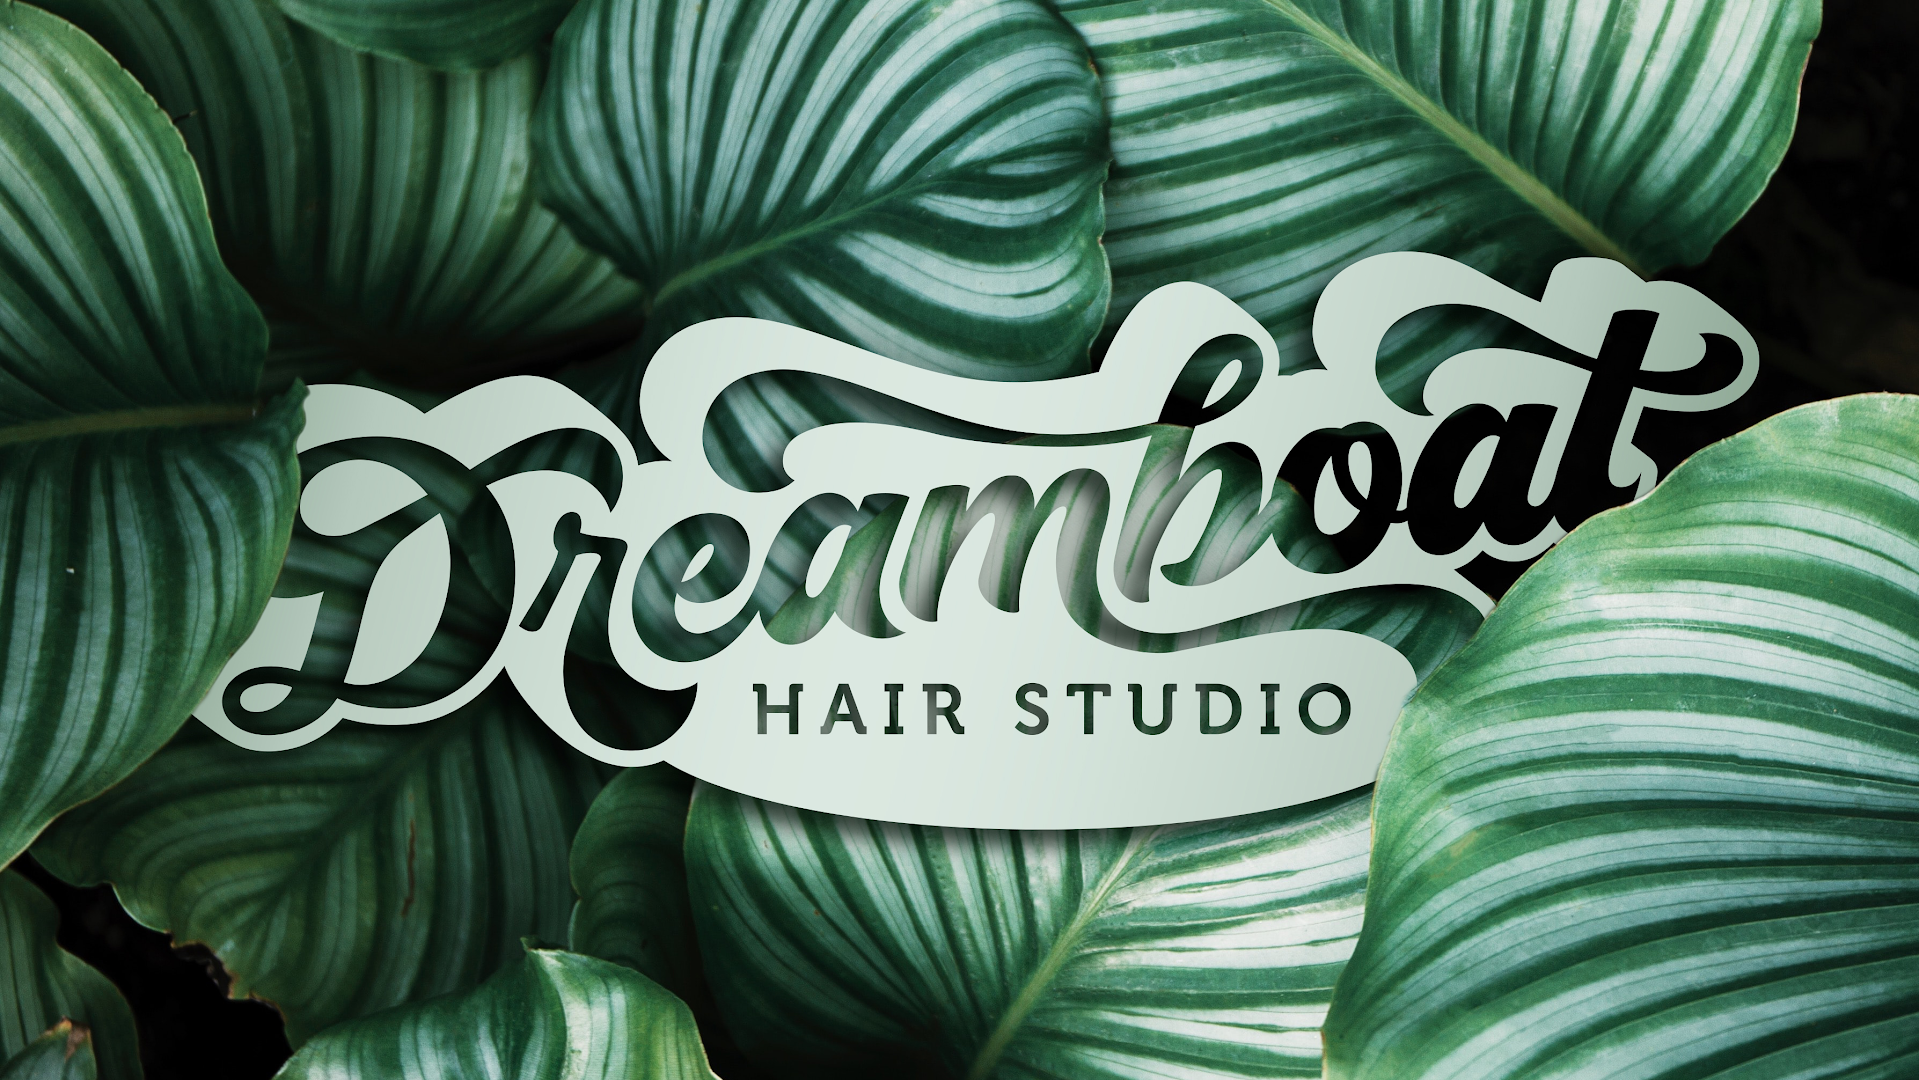 Dreamboat Hair Studio